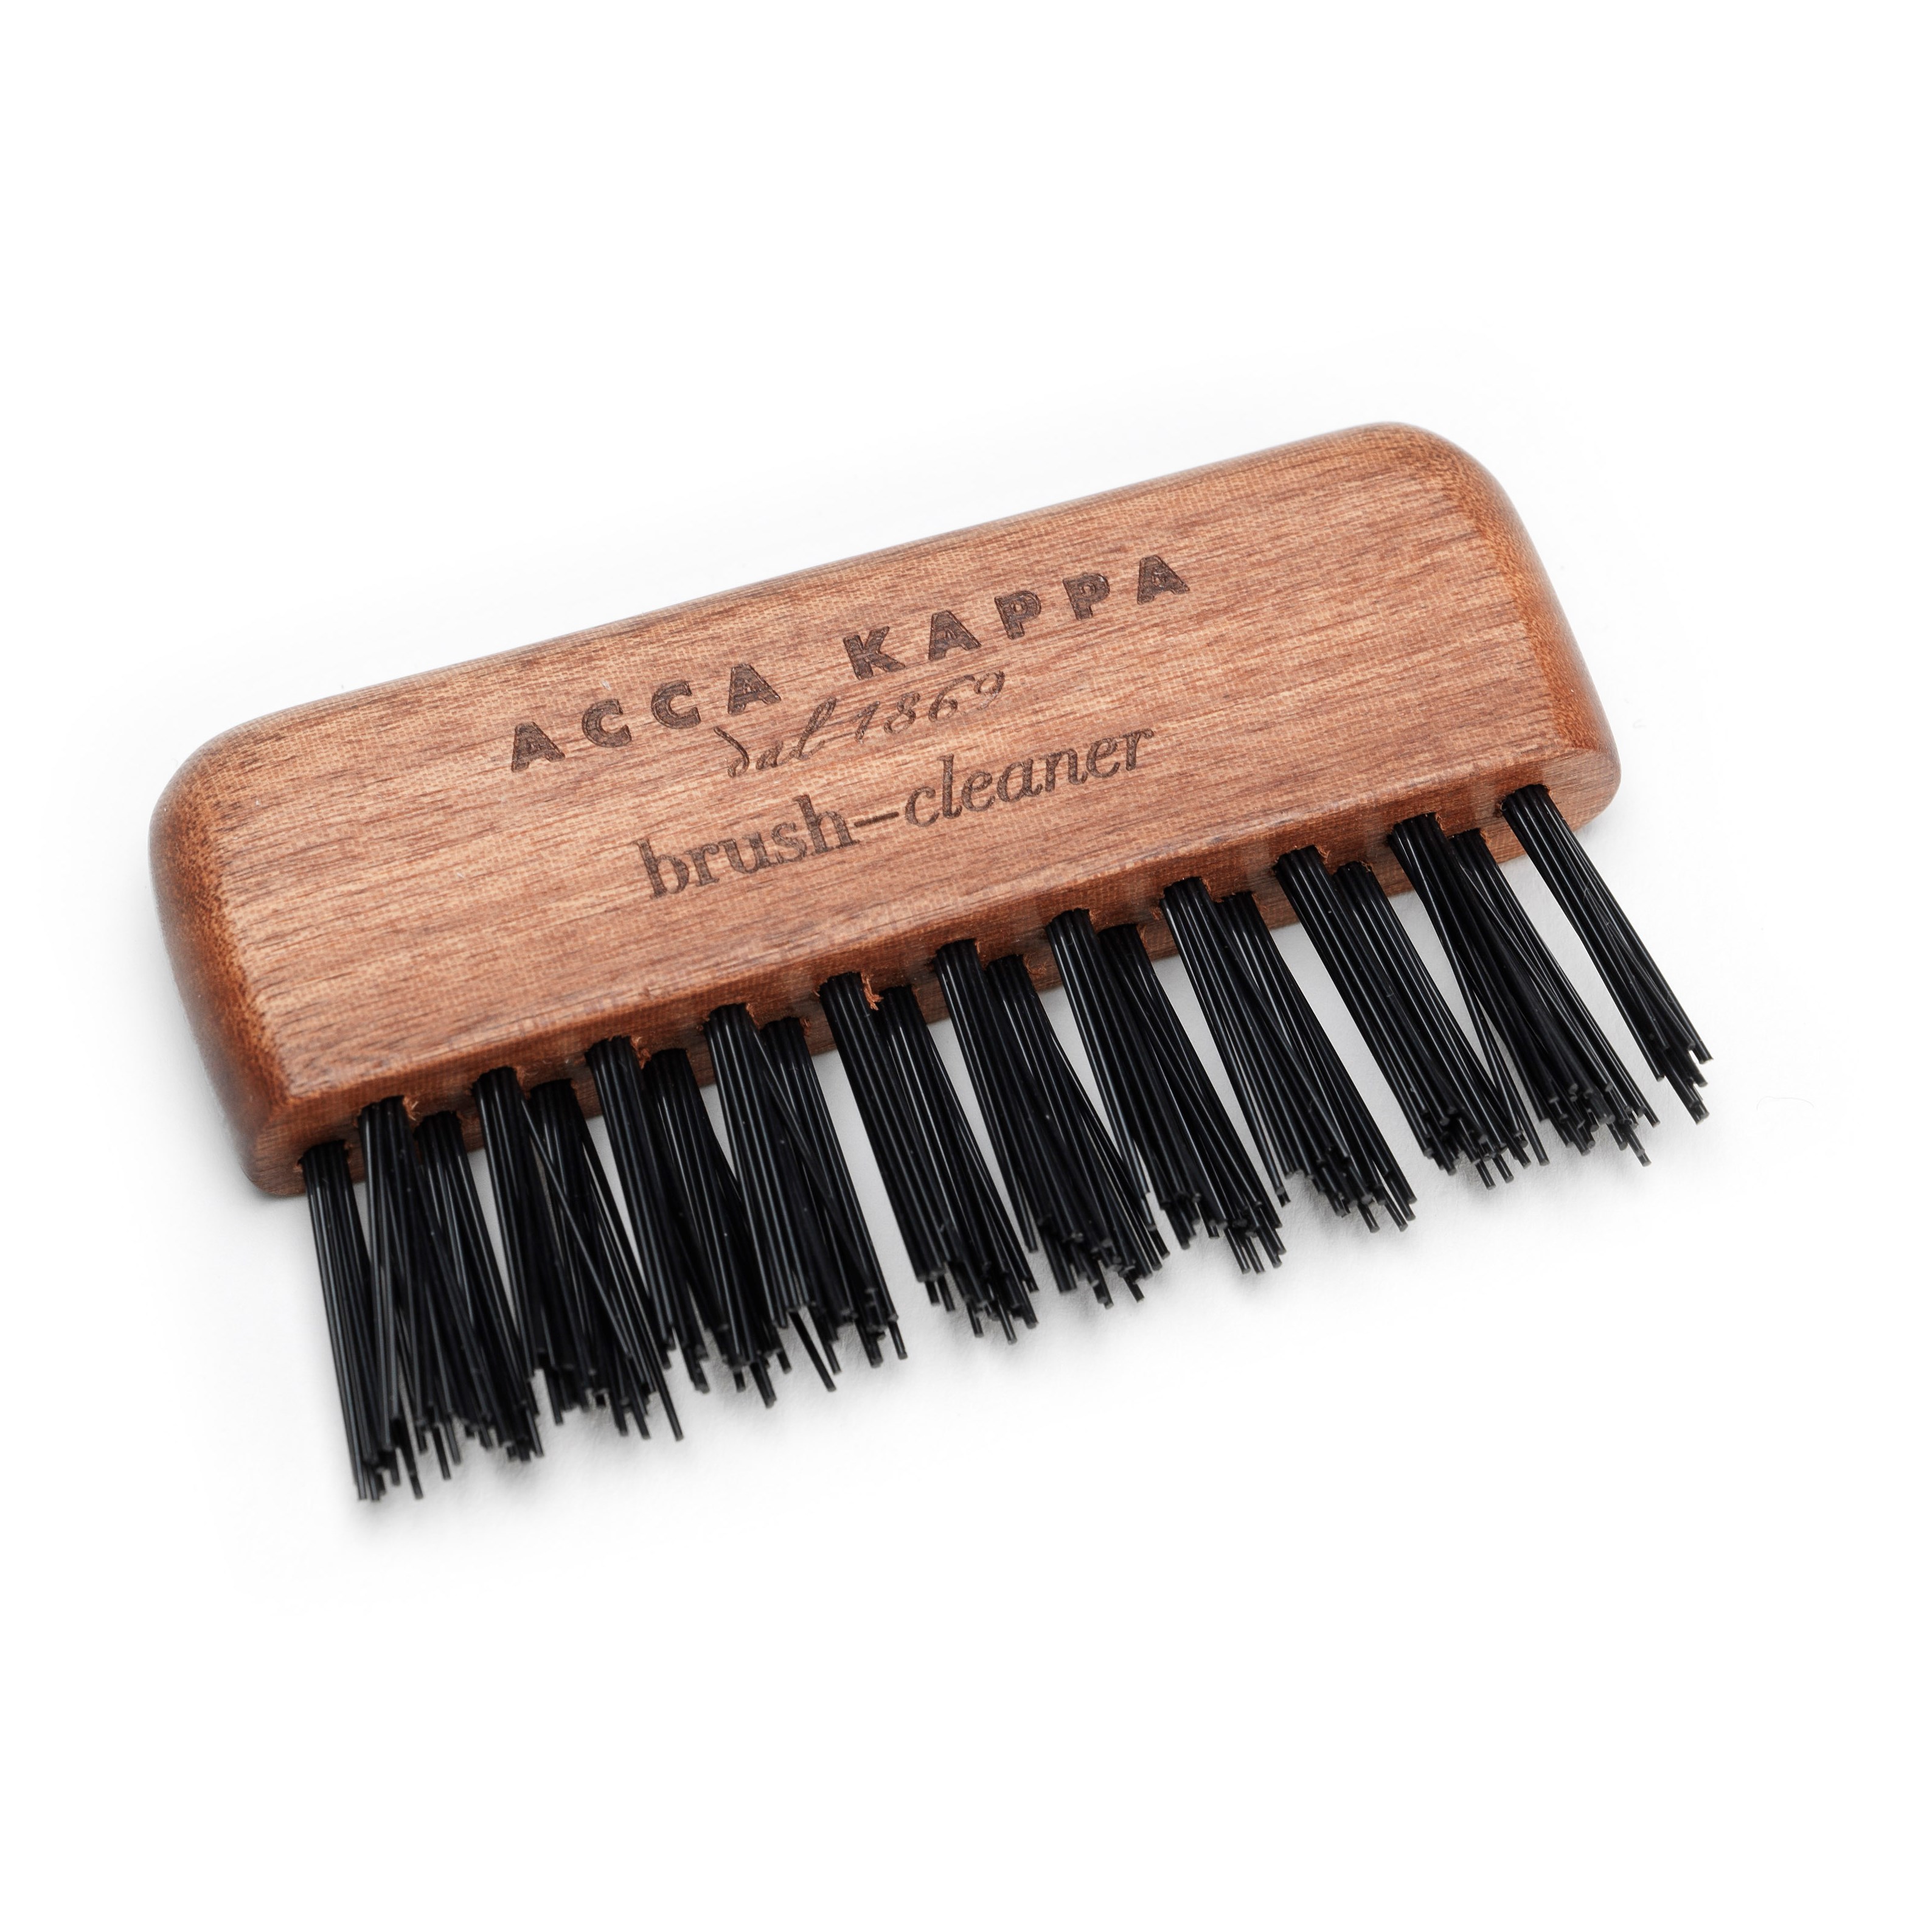 Bilde av Acca Kappa Brush & Comb Cleaner Kotibe´ Wood Black Nylon